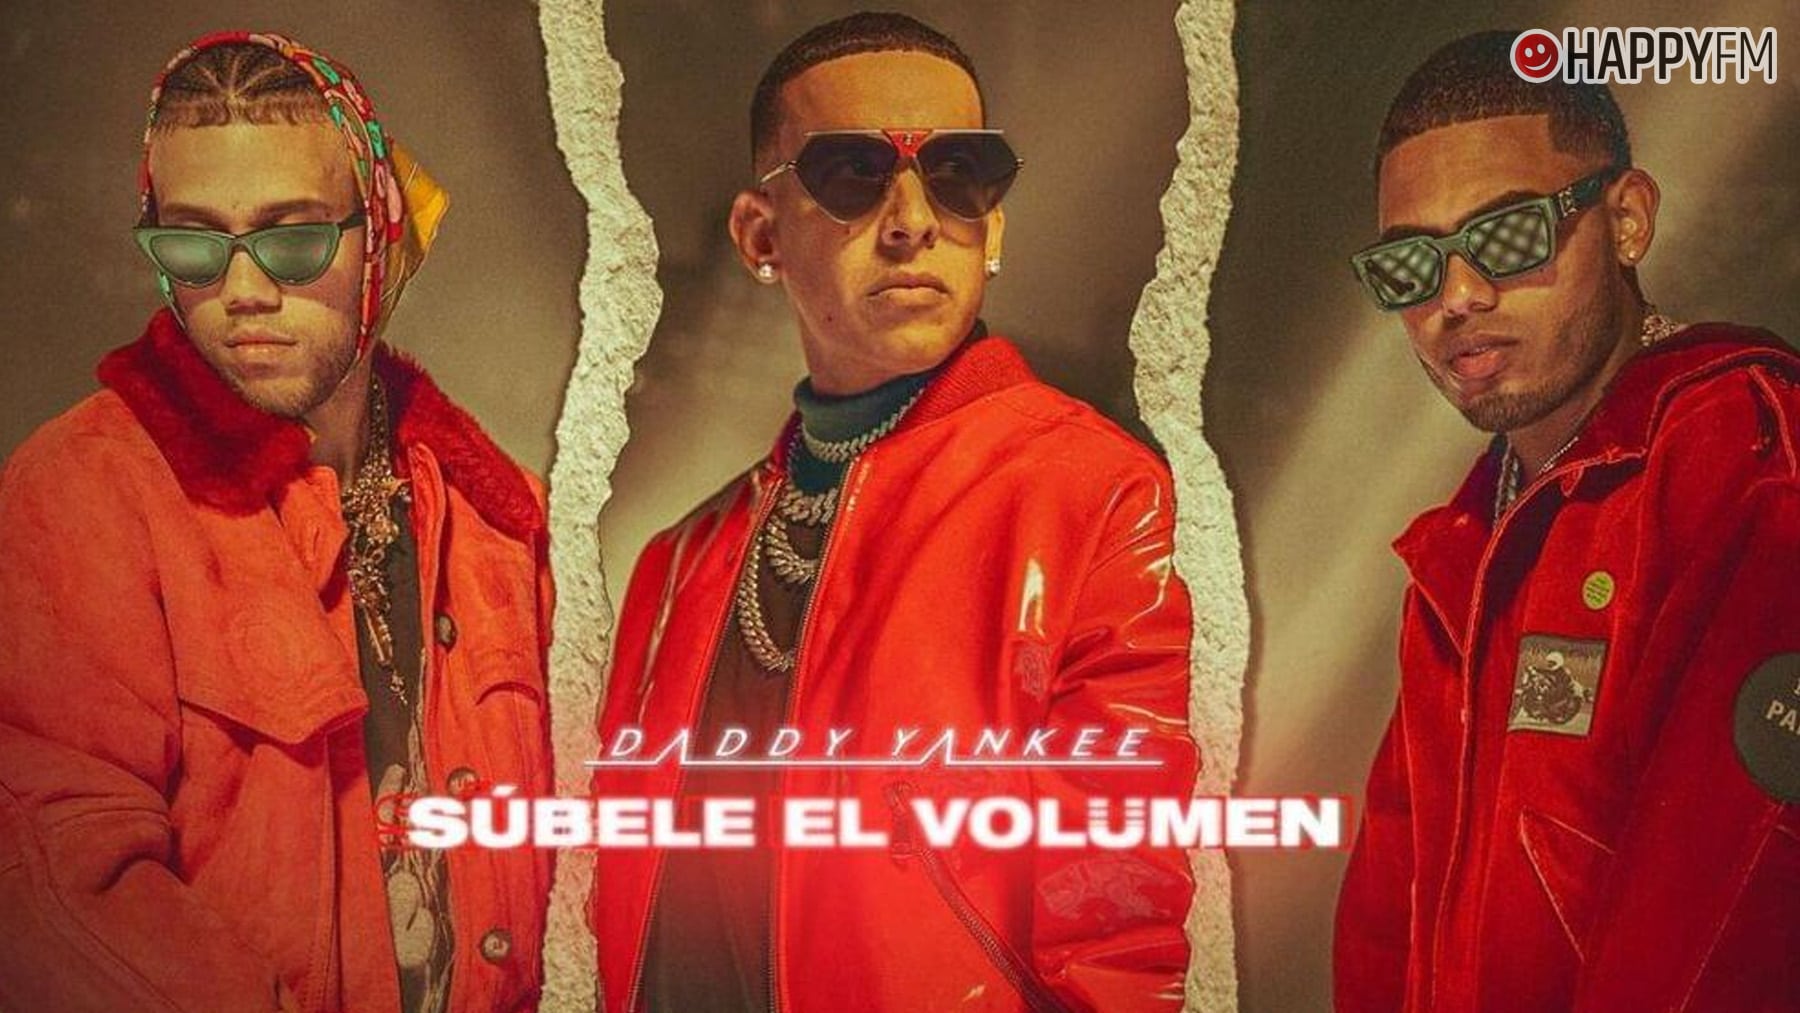 ‘Súbele el volumen’, de Daddy Yankee, Myke Towers y Jhay Cortez: letra y vídeo loading=